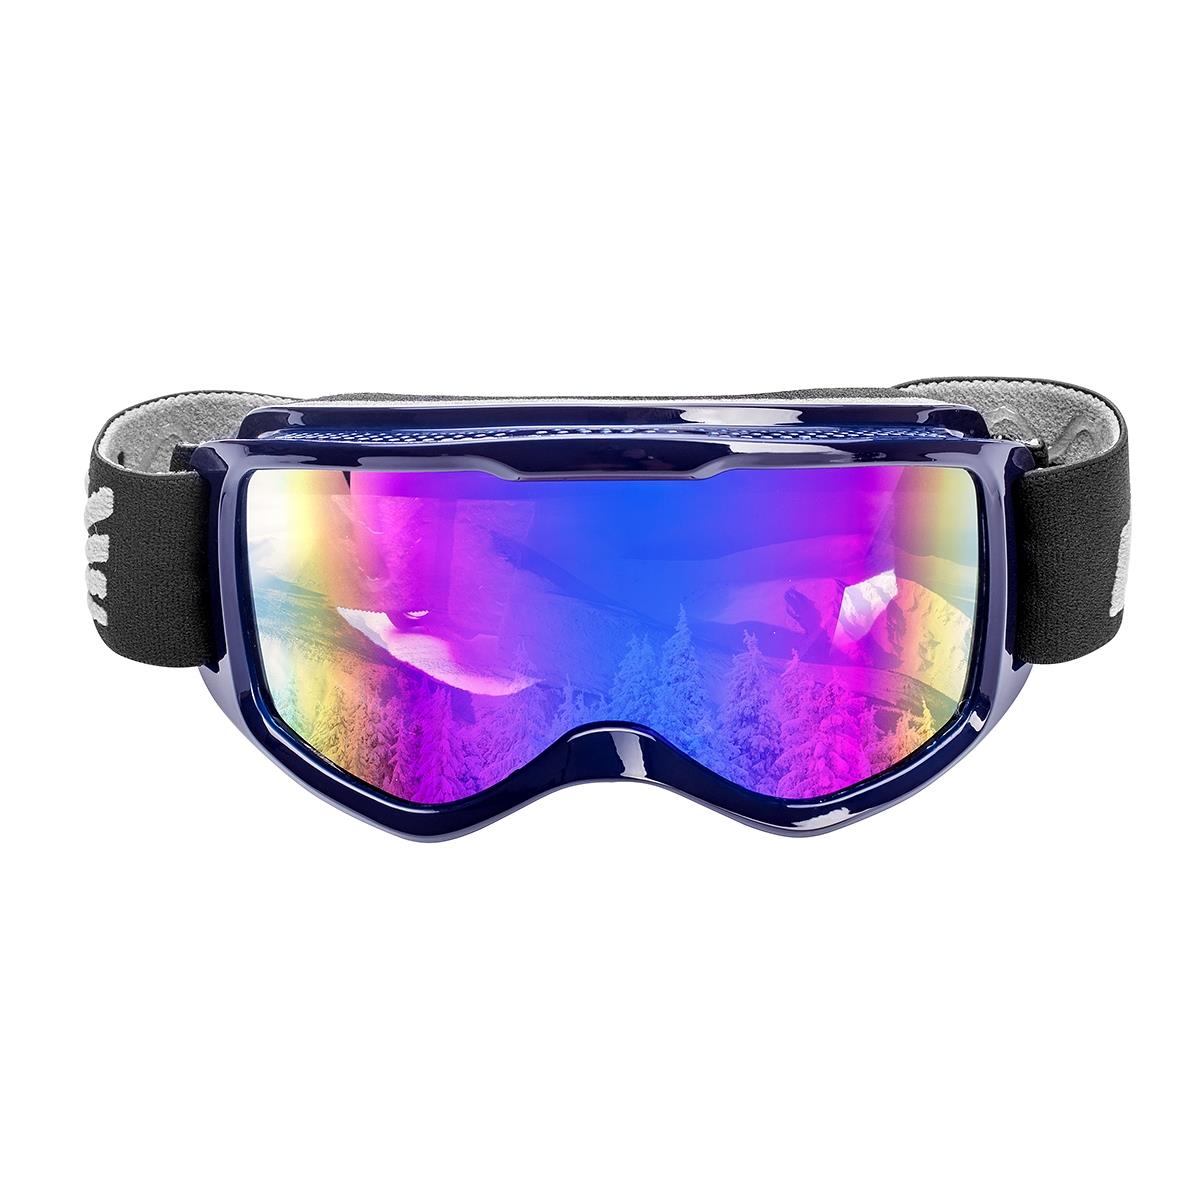 Очки горнолыжные HS-HX-040 Helios очки для плавания для взрослых uv защита